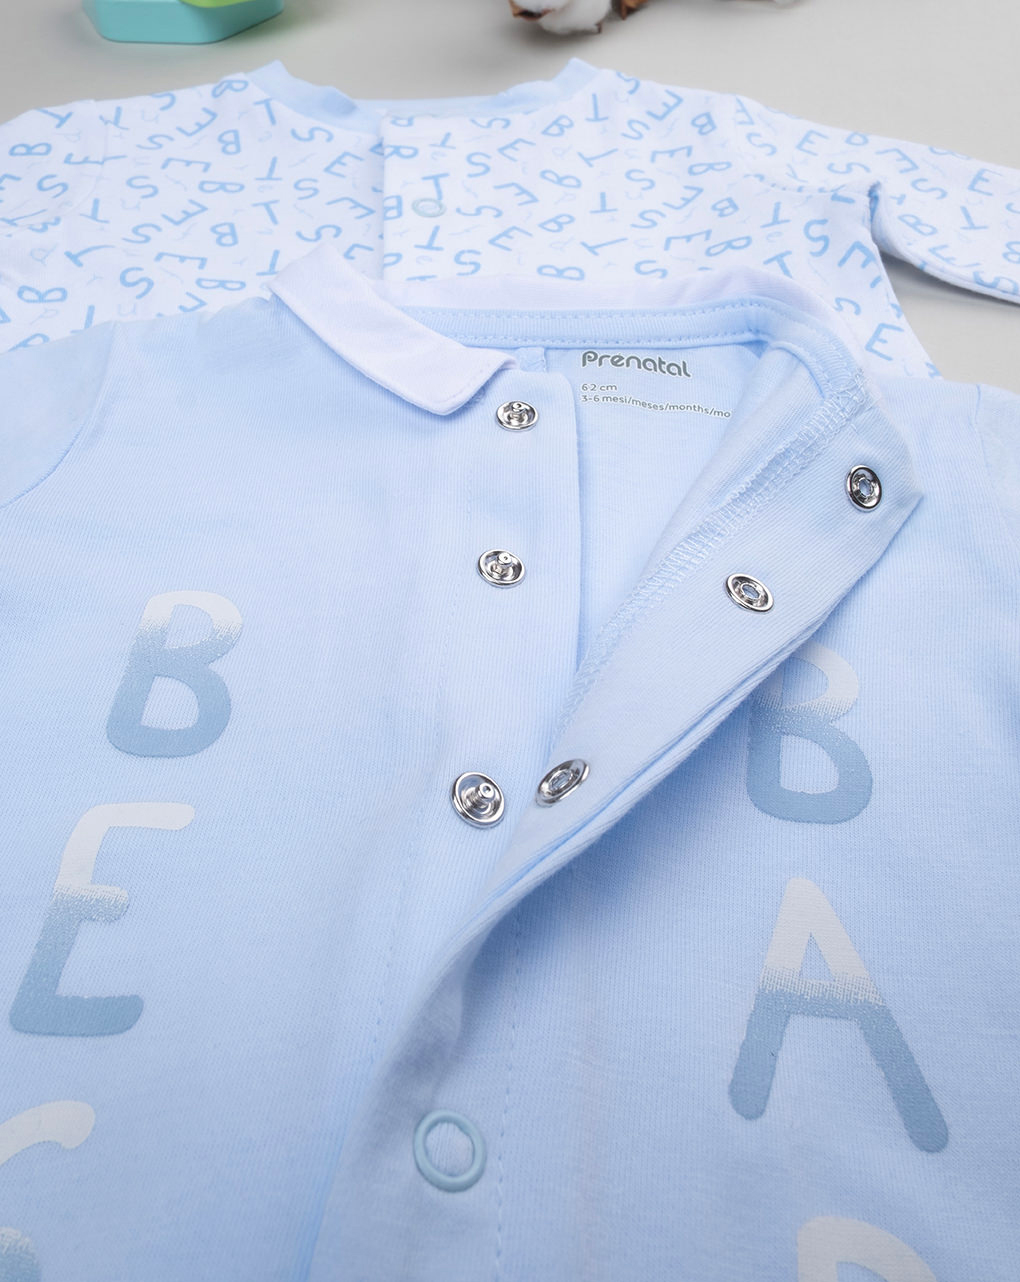 Pack 2 pijamas azul claro y blanco con letras - Prénatal